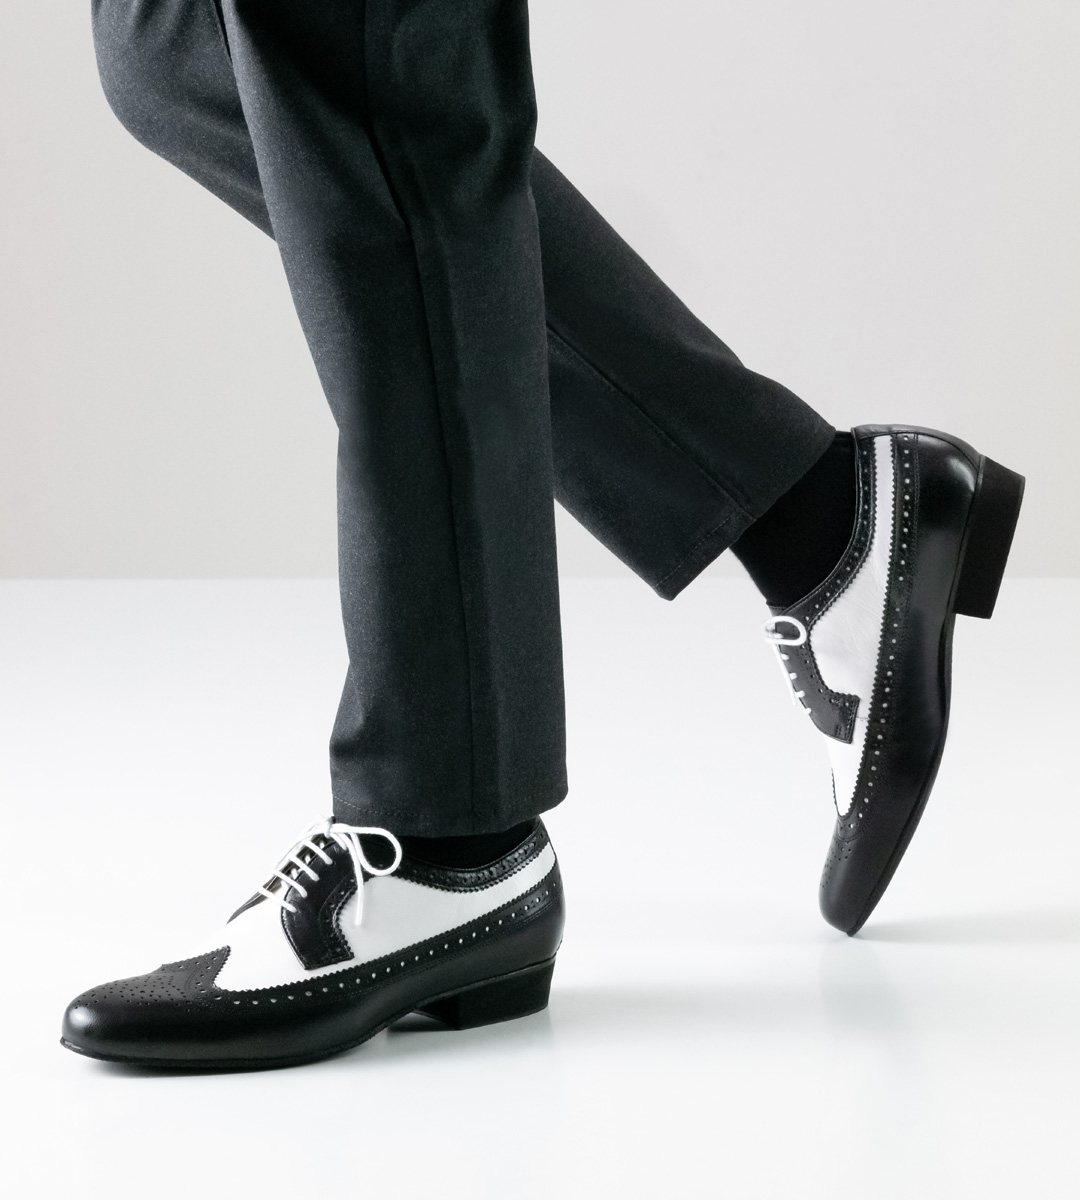 Nueva Epoca men's dance shoe in front view in combination with black jeans